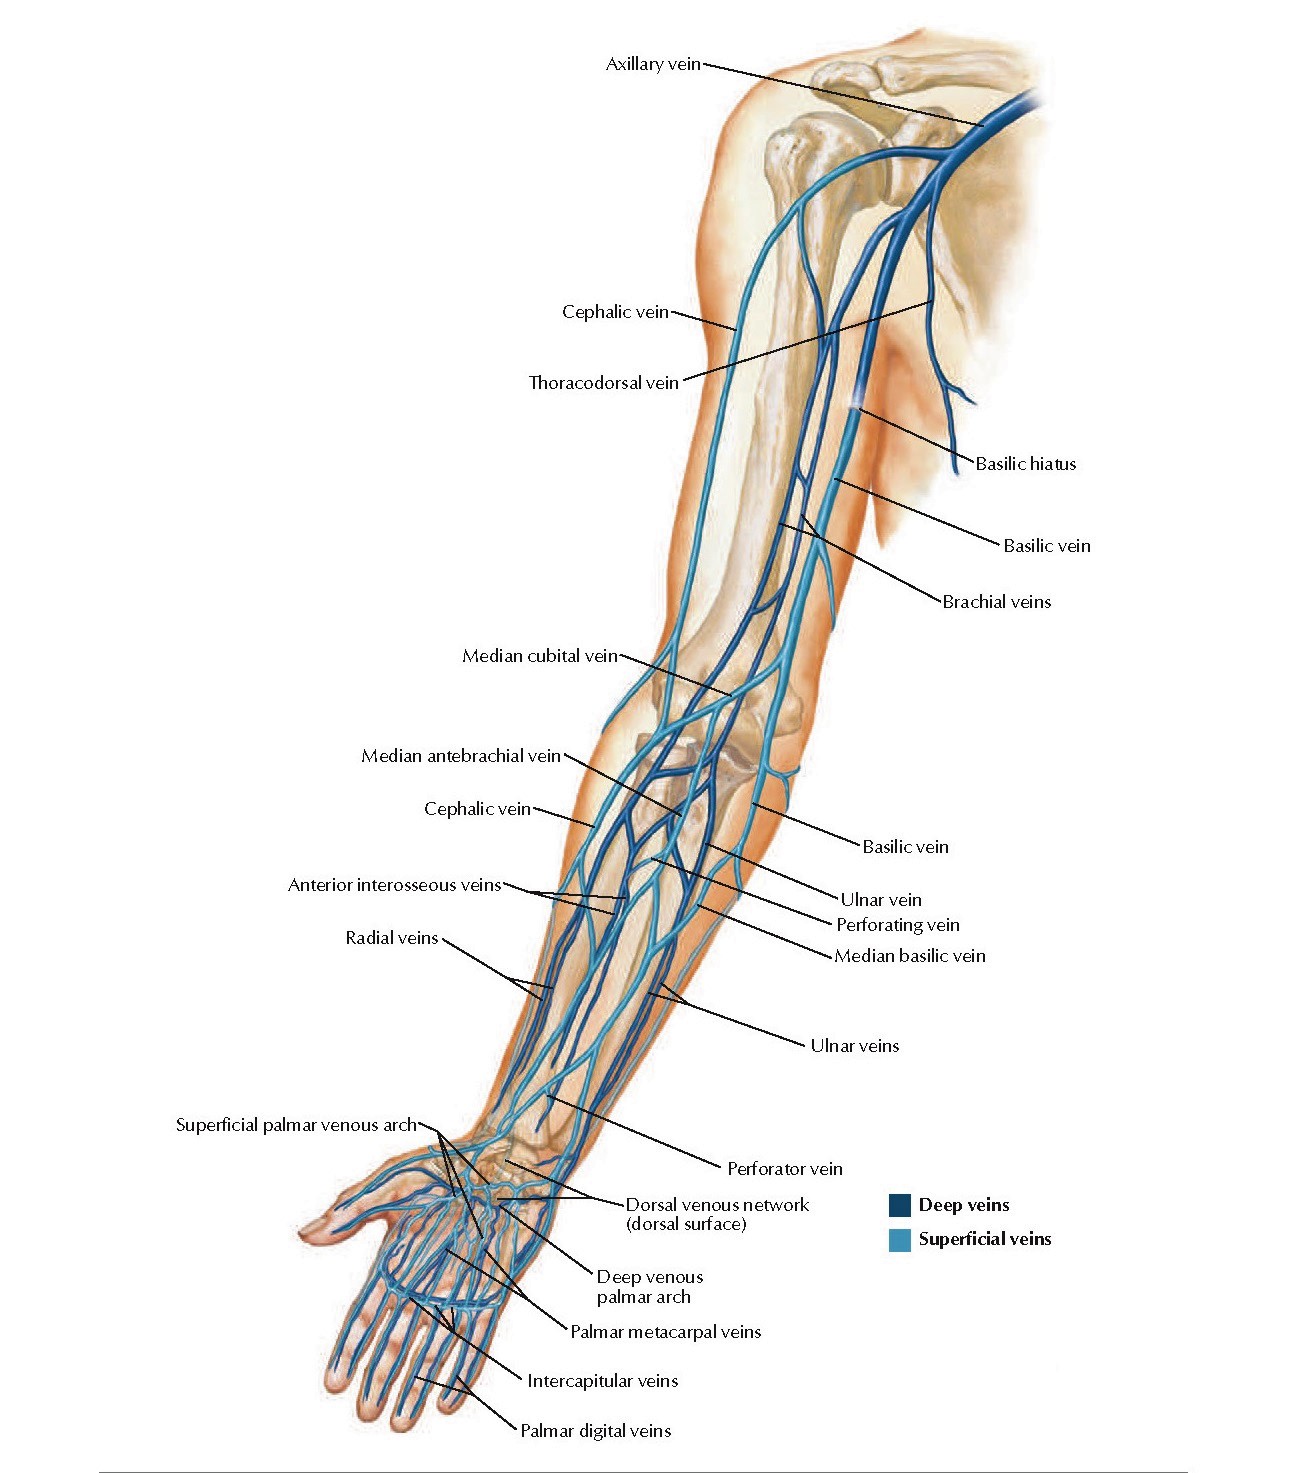 анатомия вен верхних конечностей